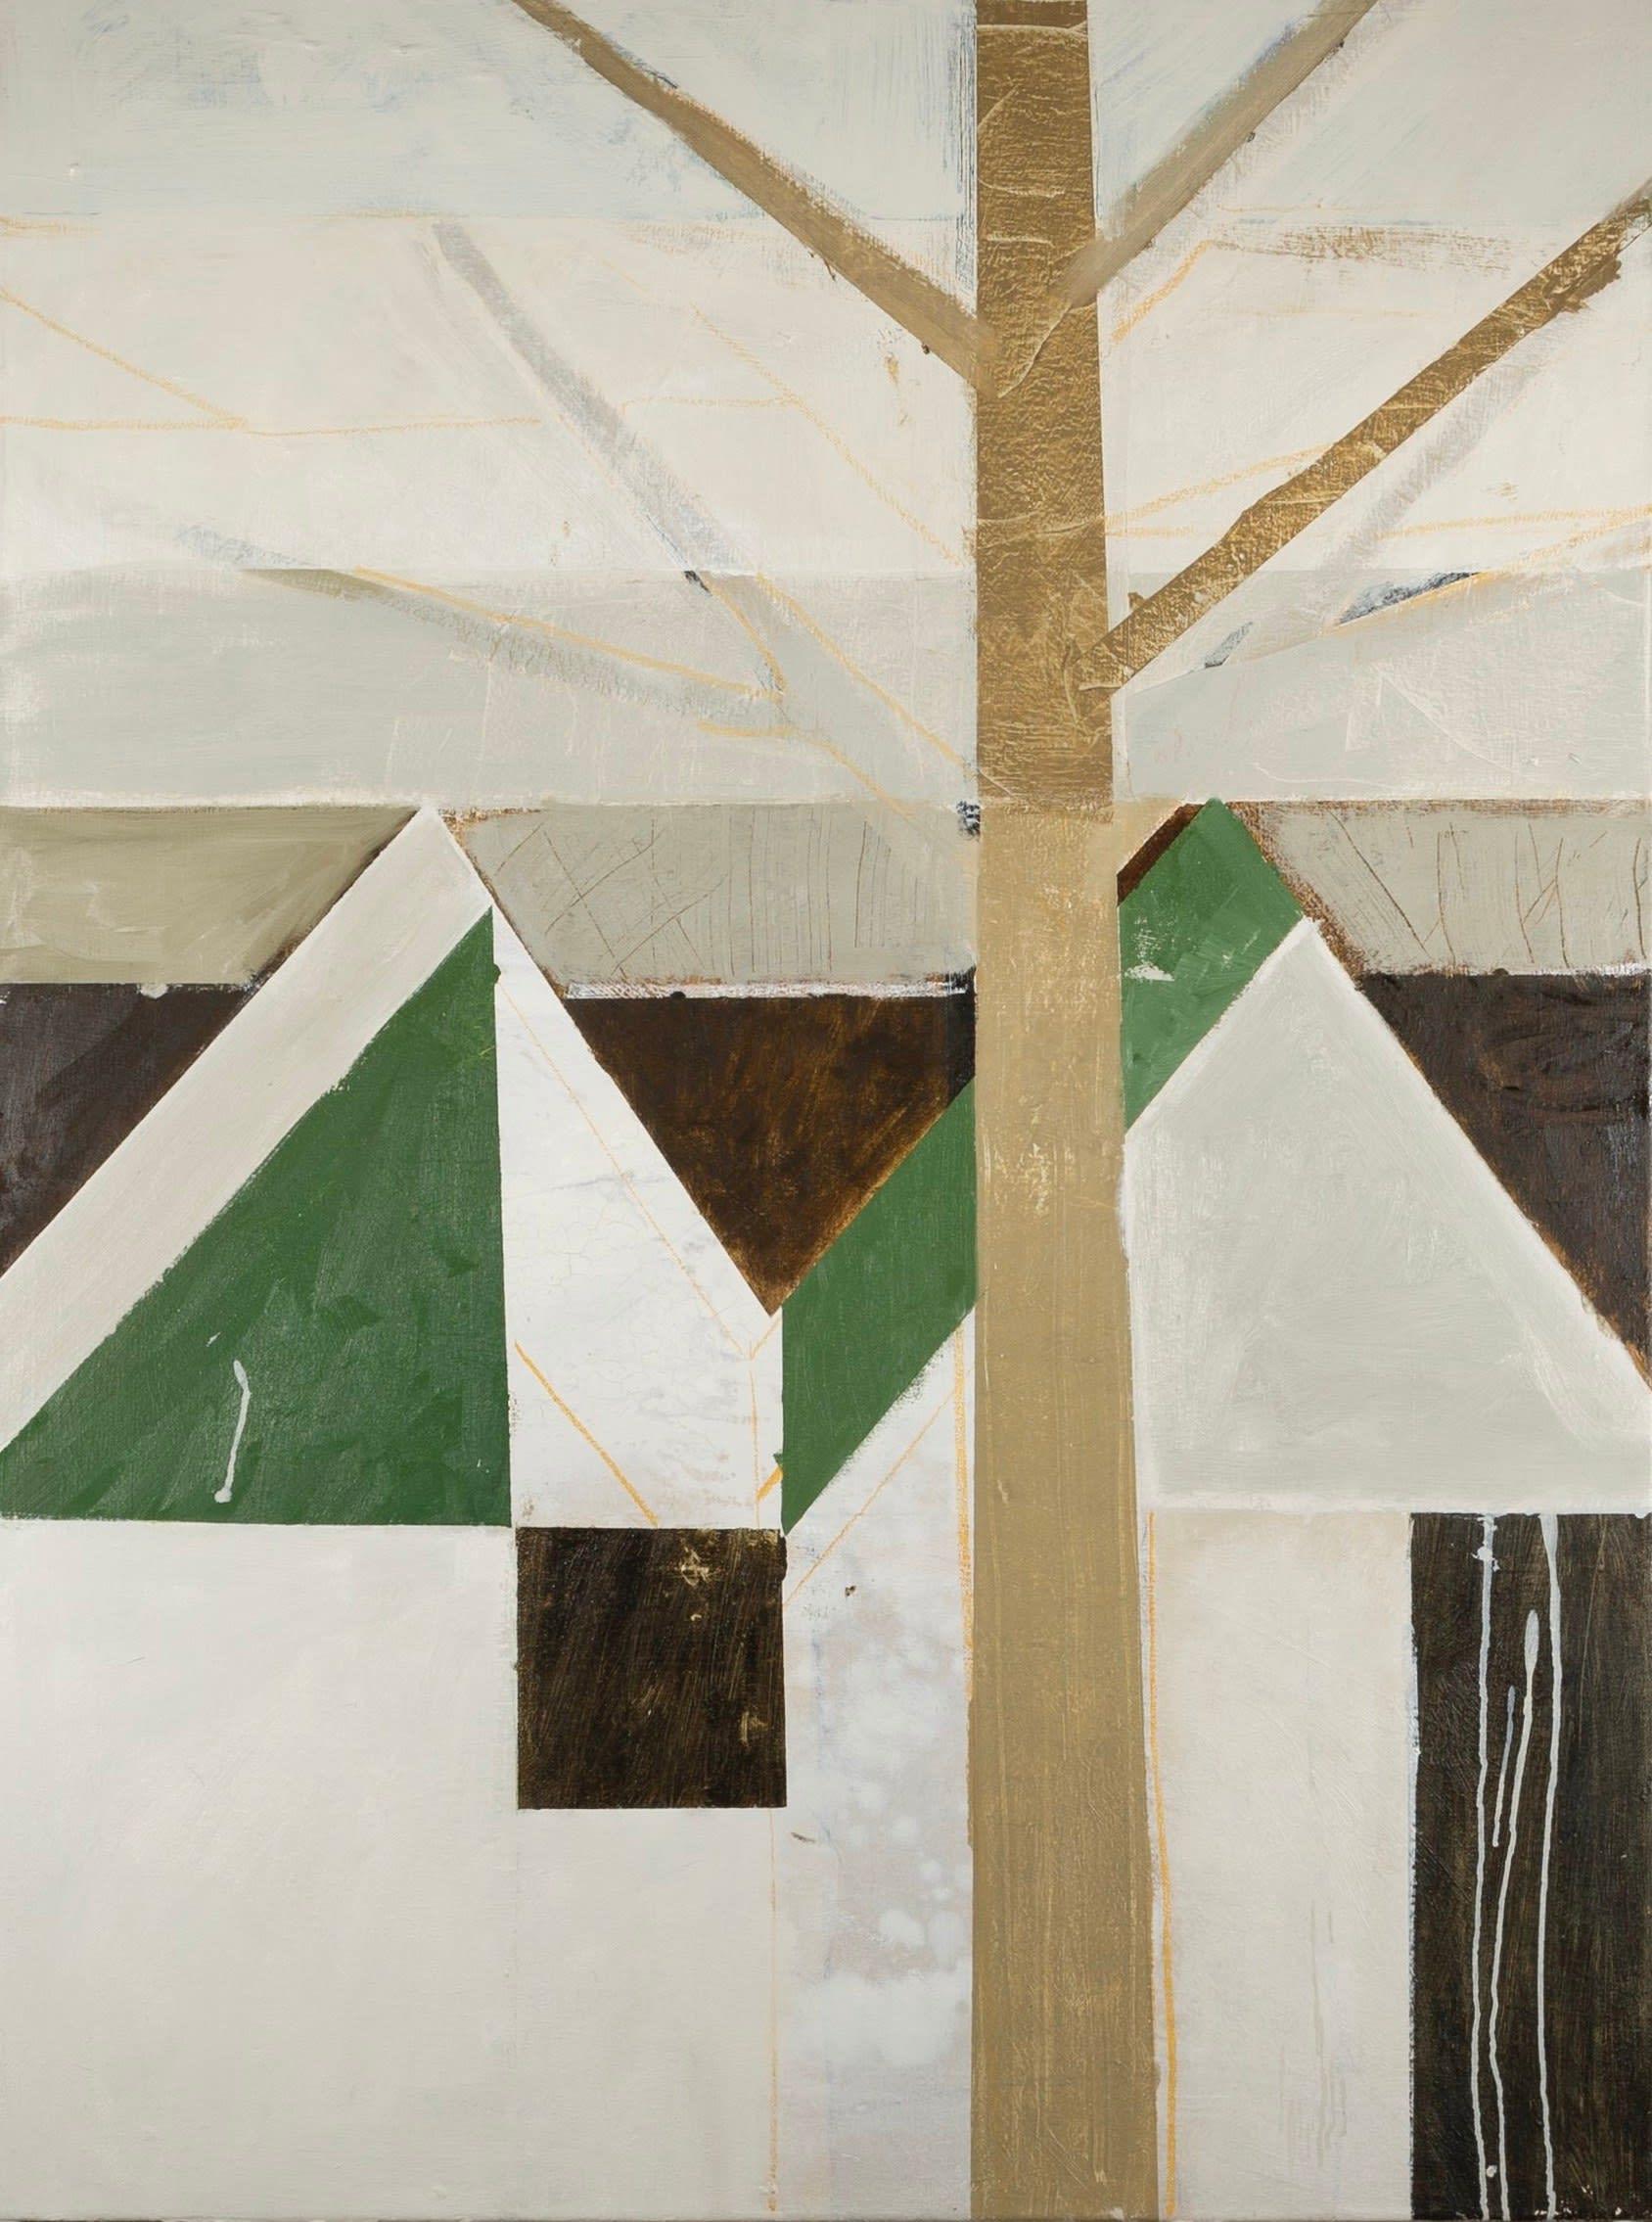 Haus mit Grün, Öl auf leinwand Gemälde von Daisy Cook B. 1965, 2024

Zusätzliche Informationen:
Medium: Öl auf Leinwand
Abmessungen: 100 x 77 cm
39 3/8 x 30 1/4 in

Daisy Cook ist eine britische Malerin von Landschaften und Stillleben.

Cook schafft